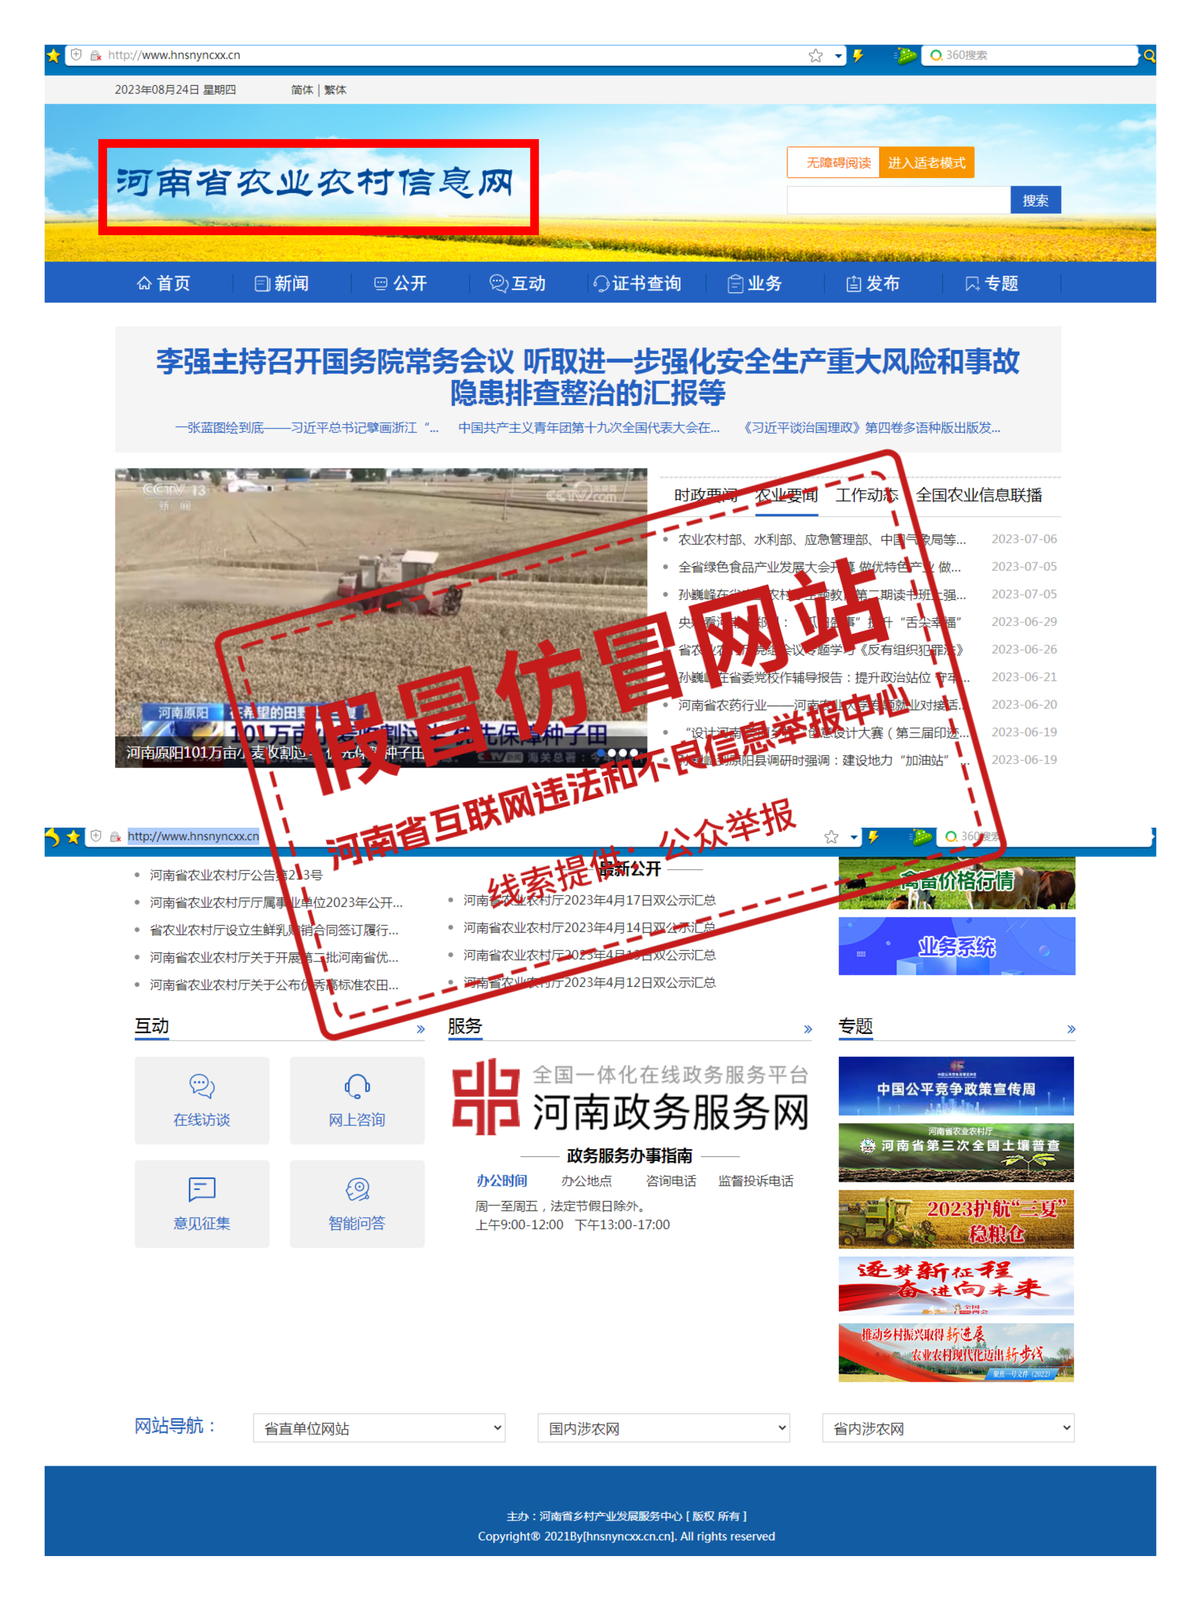 提醒！“河南省农业农村信息网”为 假冒仿冒网站